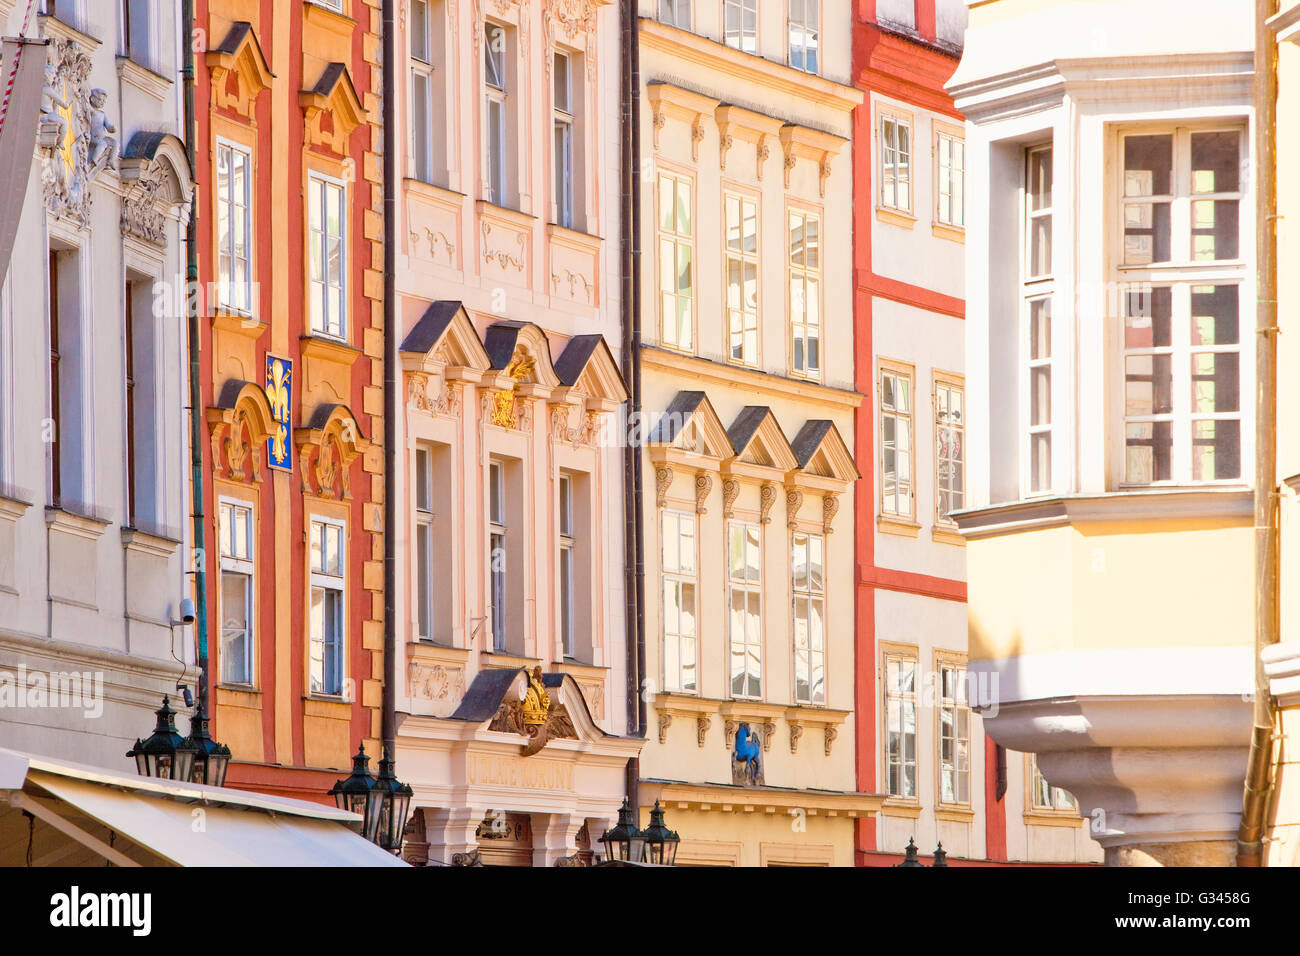 République tchèque, Prague - Belles maisons sur la place de la Vieille Ville Banque D'Images